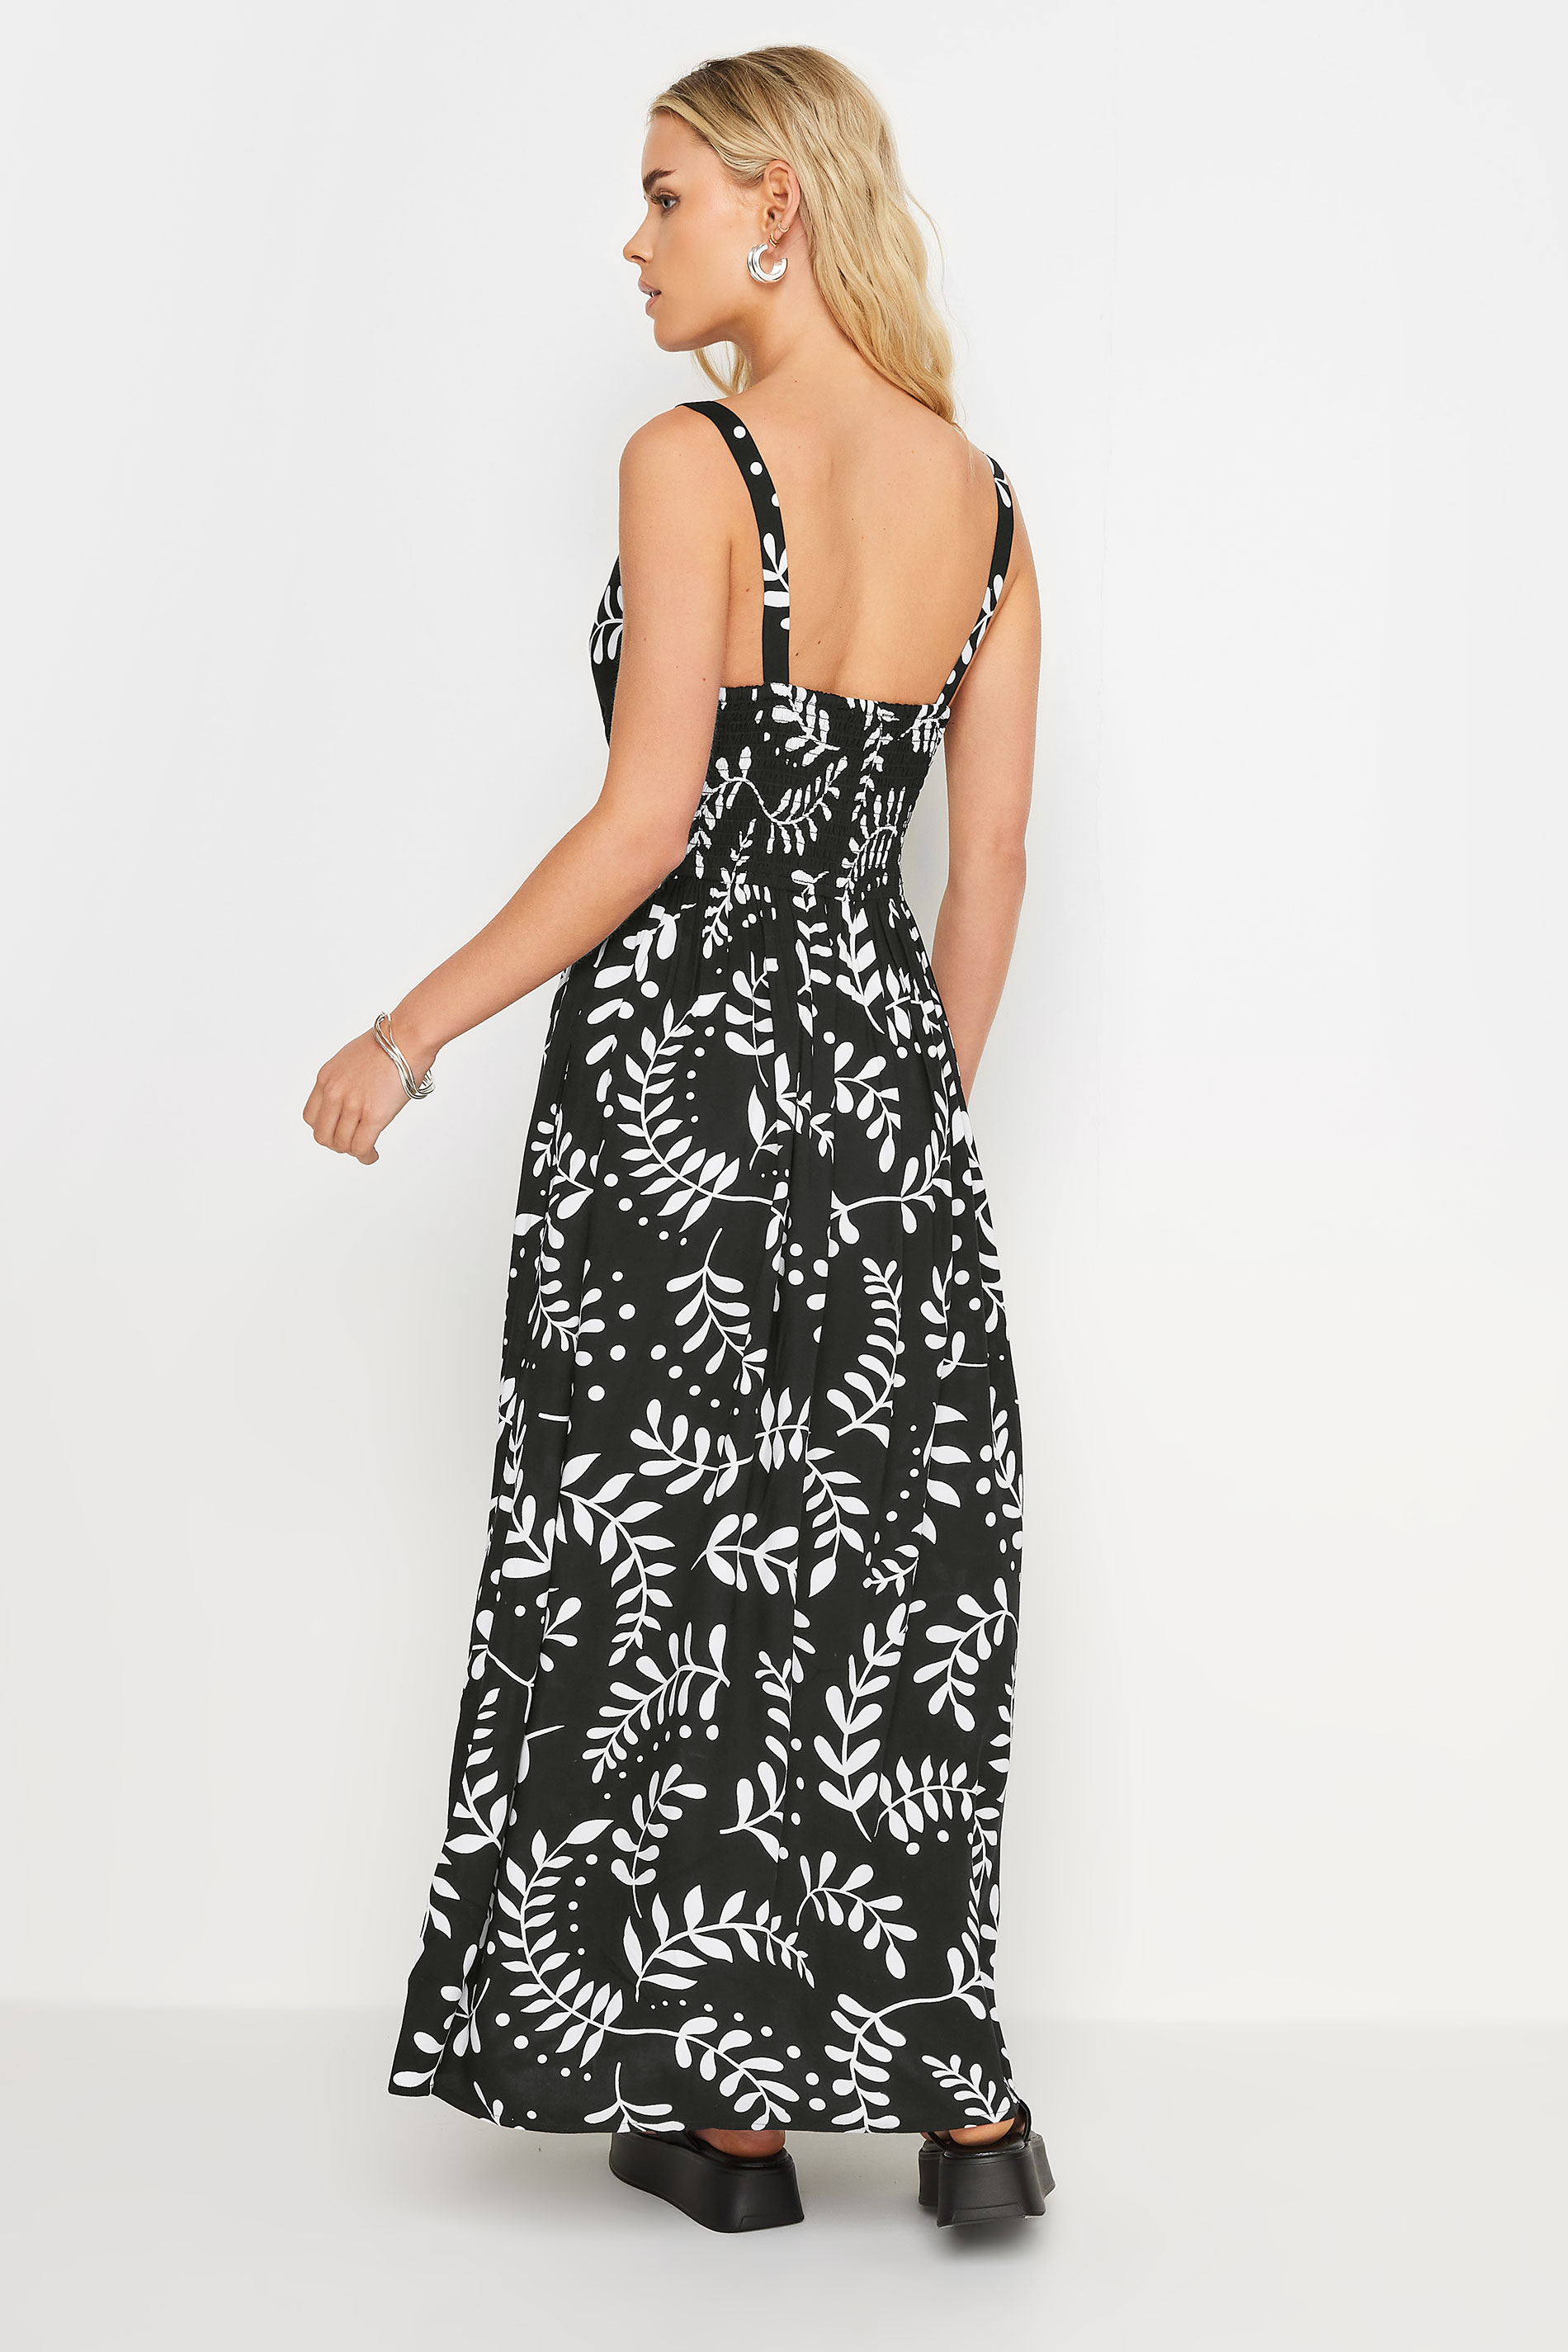 Petite Black Leaf Print Maxi Dress | PixieGirl 3